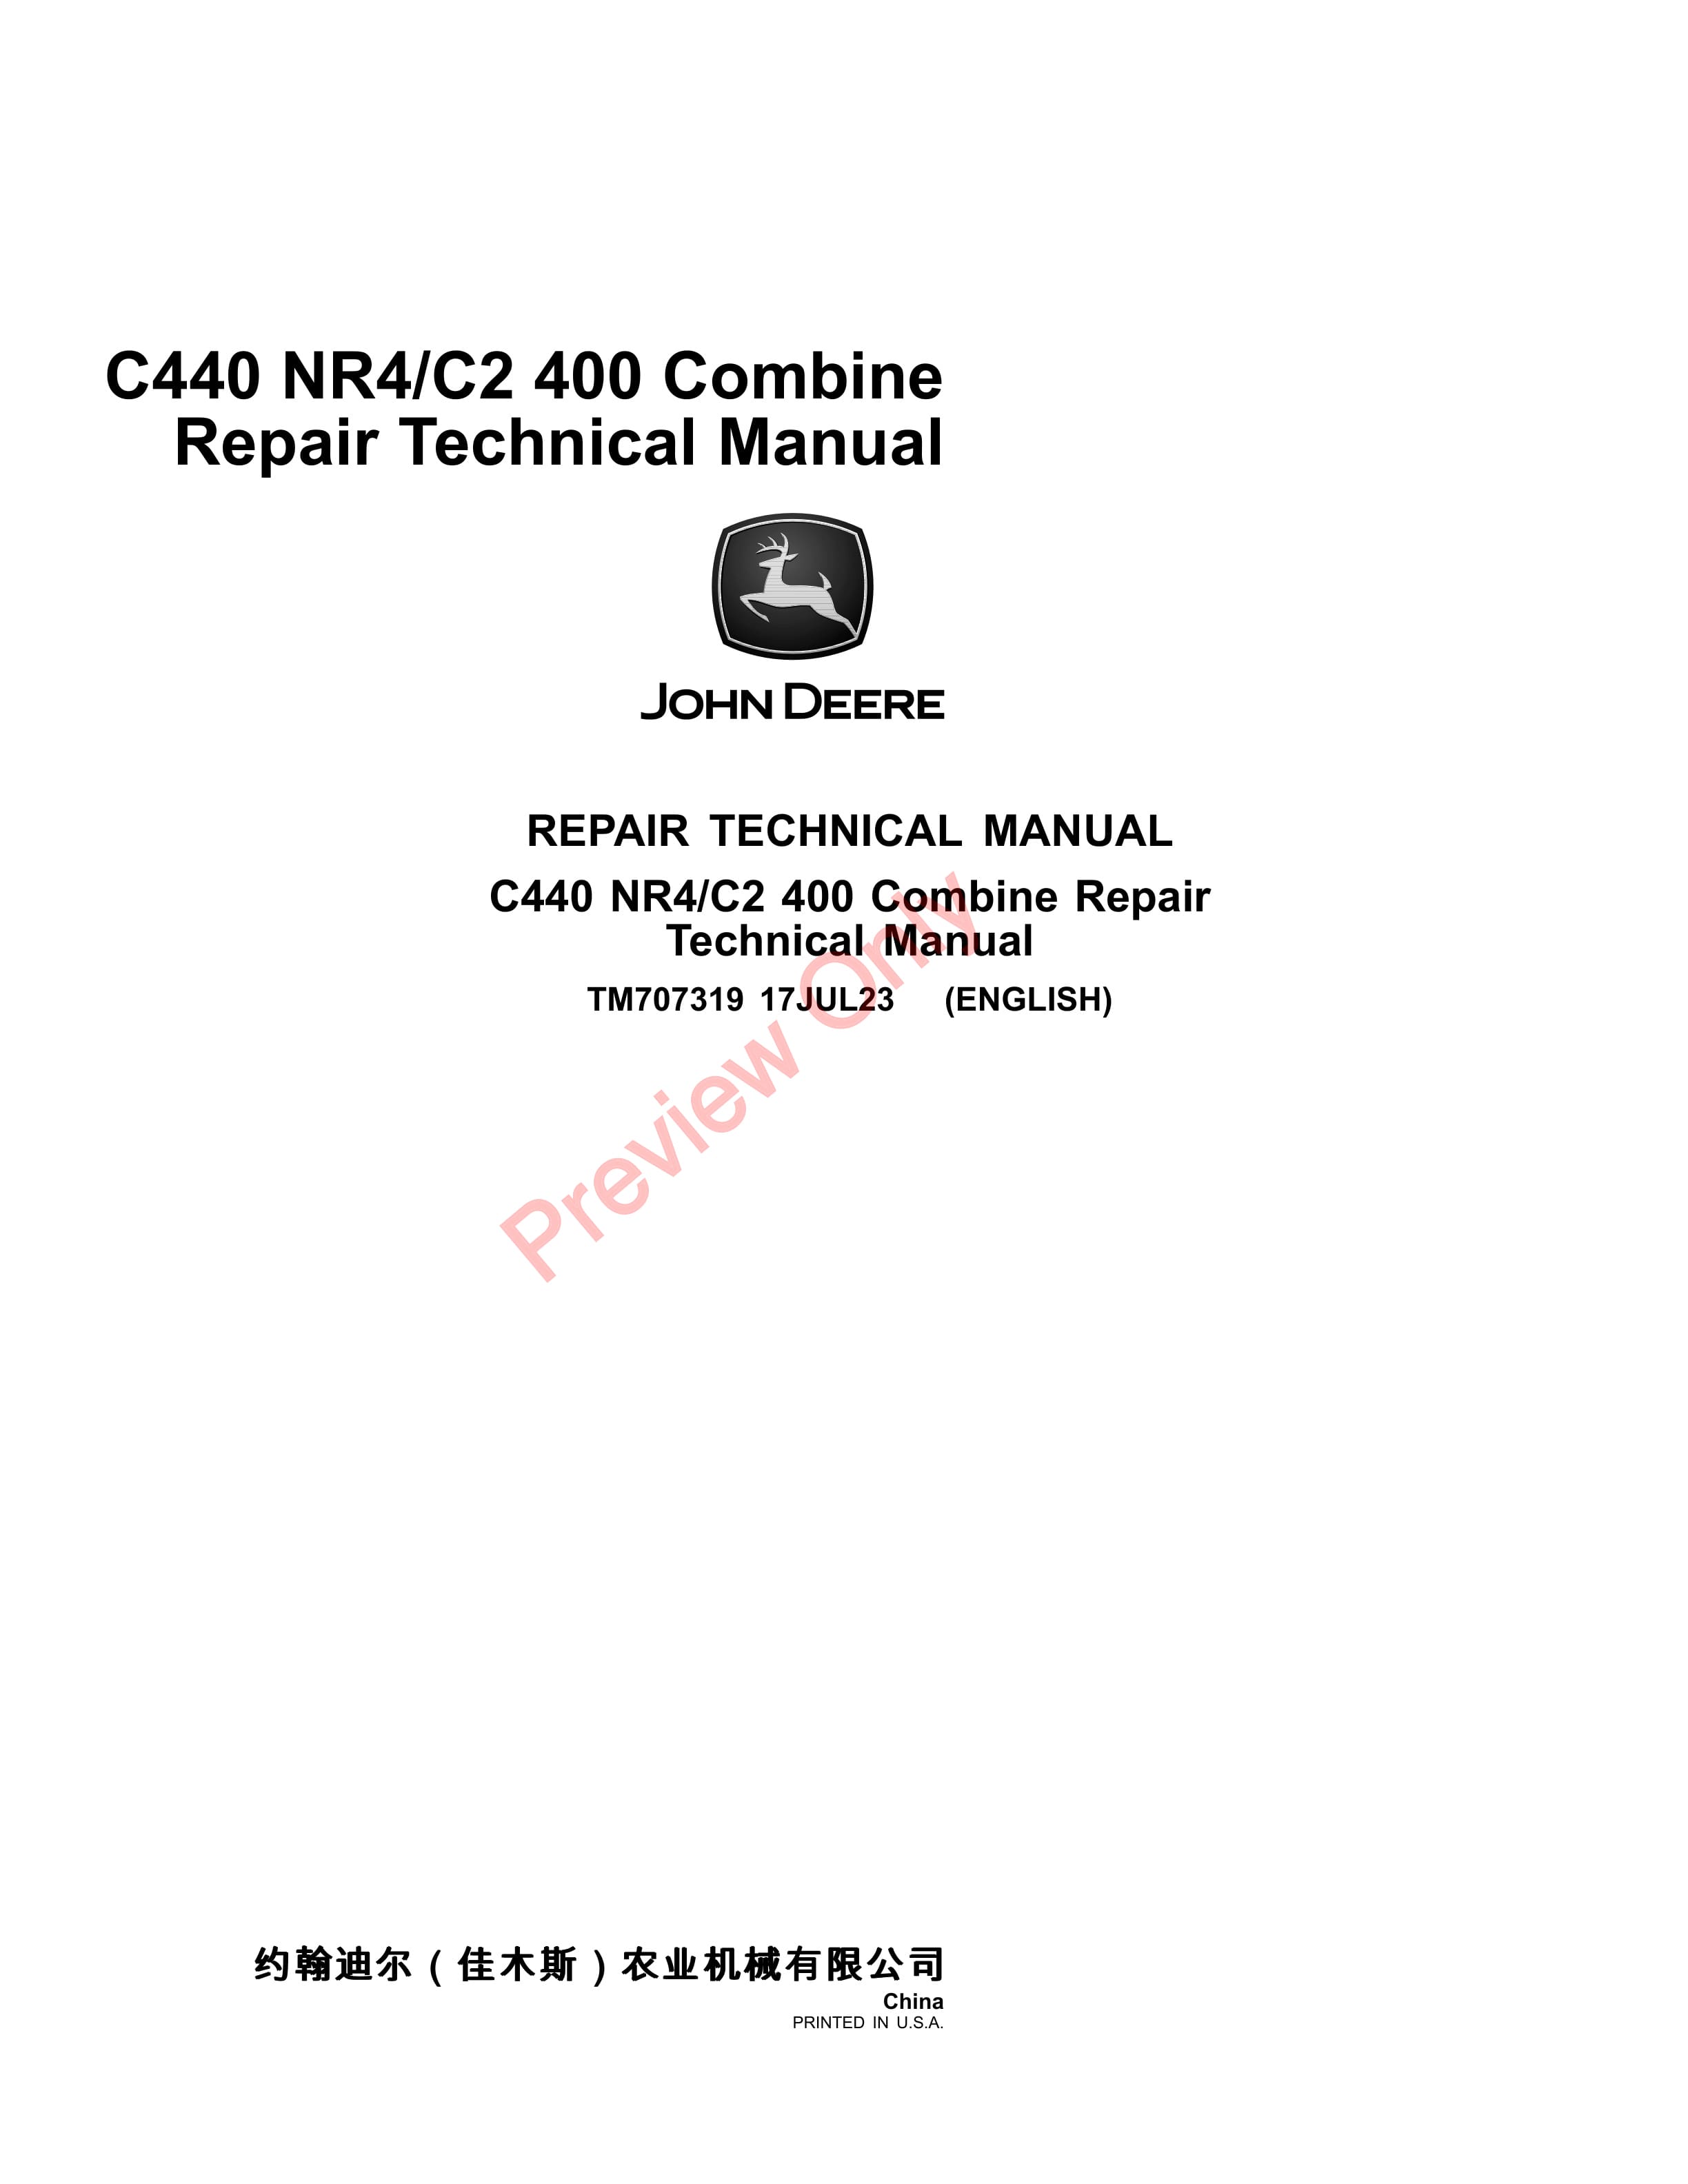 John Deere C440 NR4 Combine Repair Technical Manual TM707319 17JUL23 1